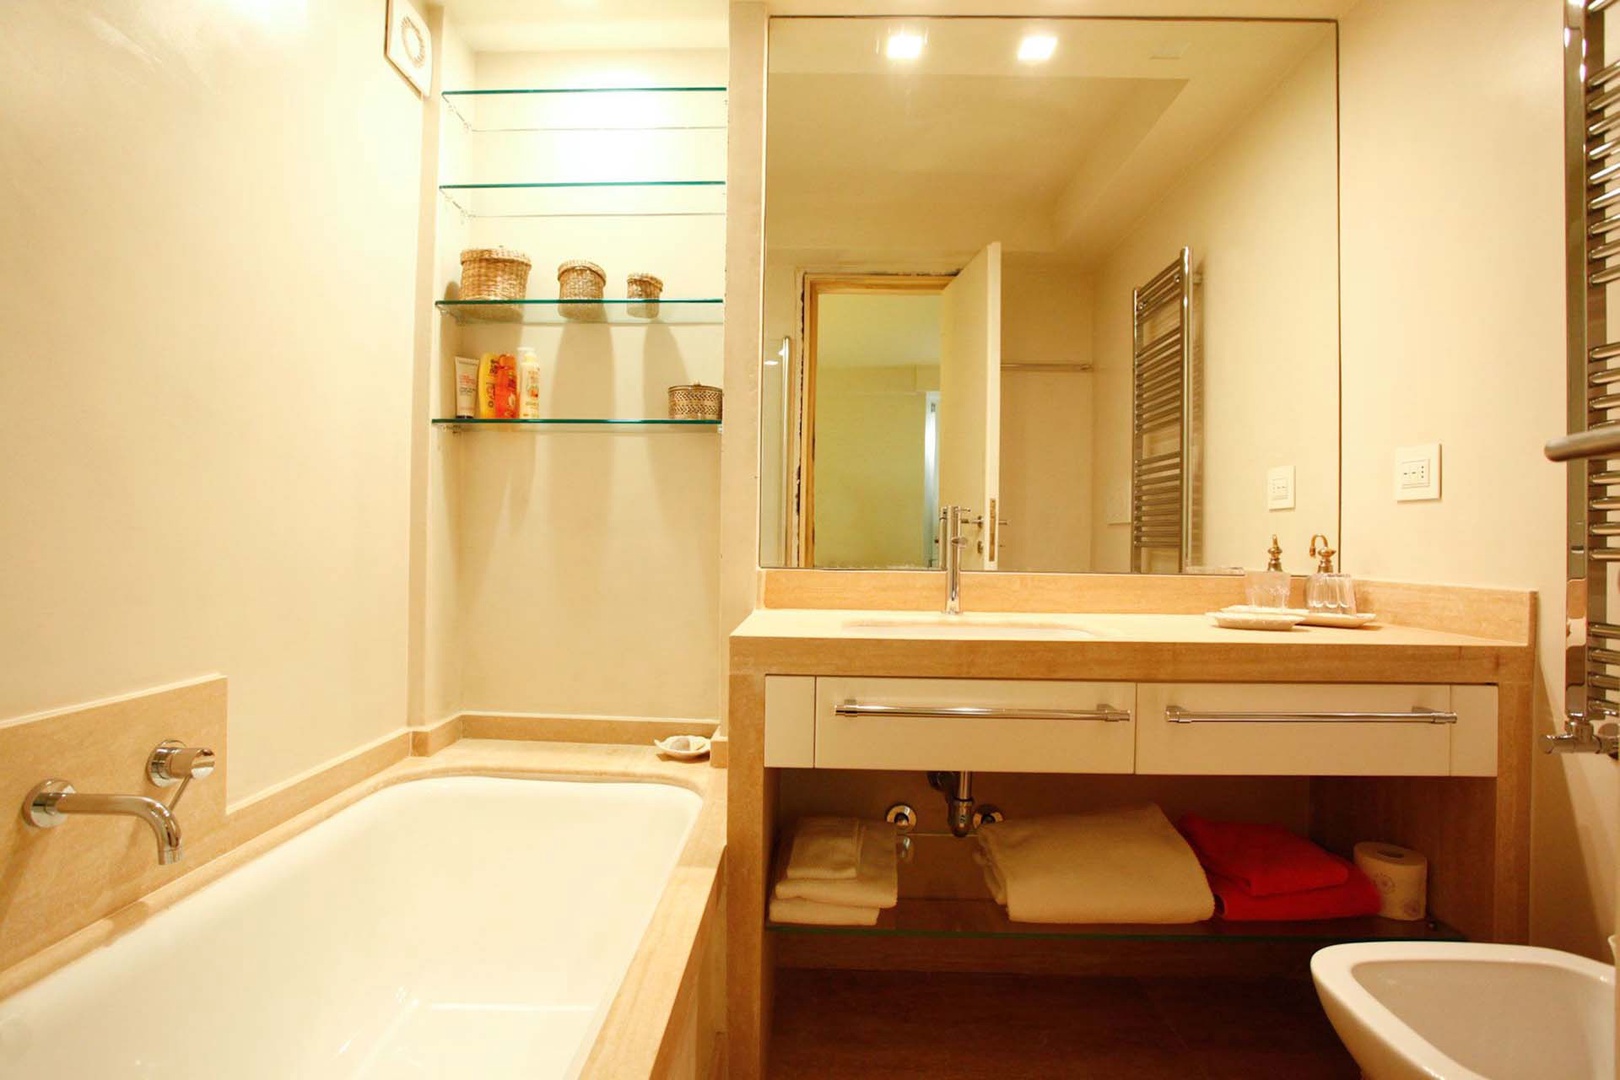 Bathroom 3 with bathtub en suite to bedroom 3